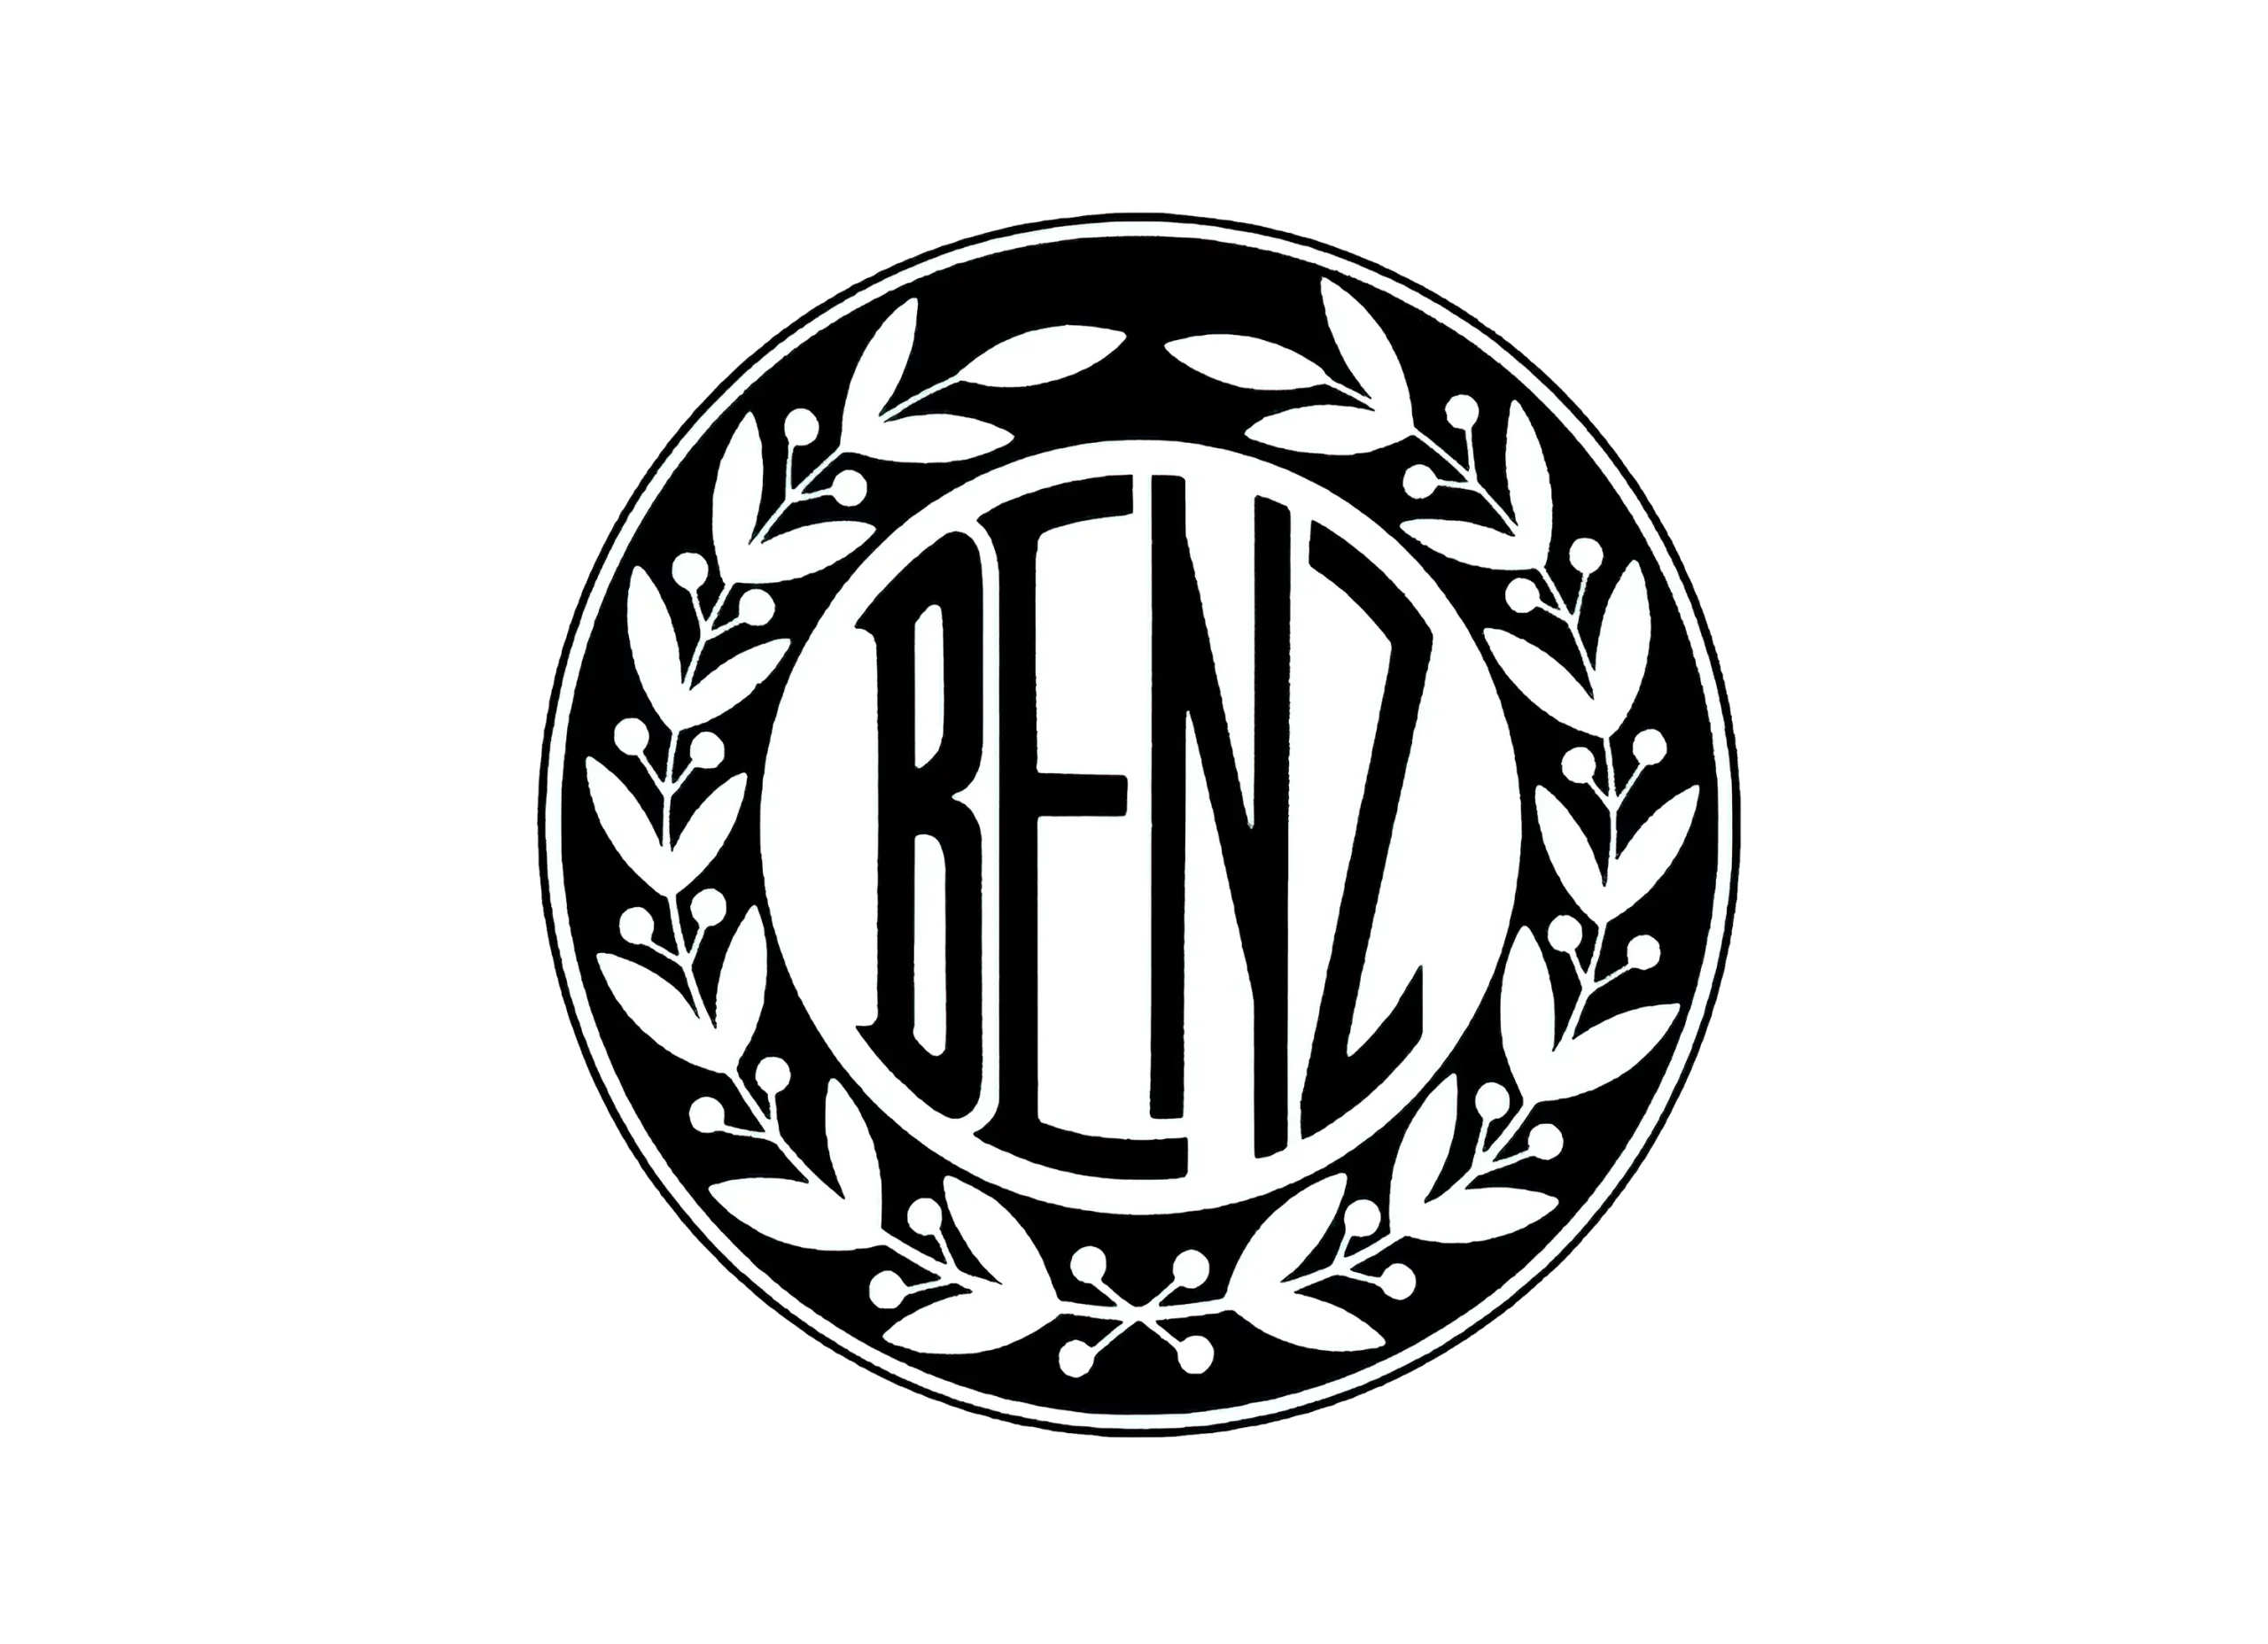 Benz logo 1909-1916